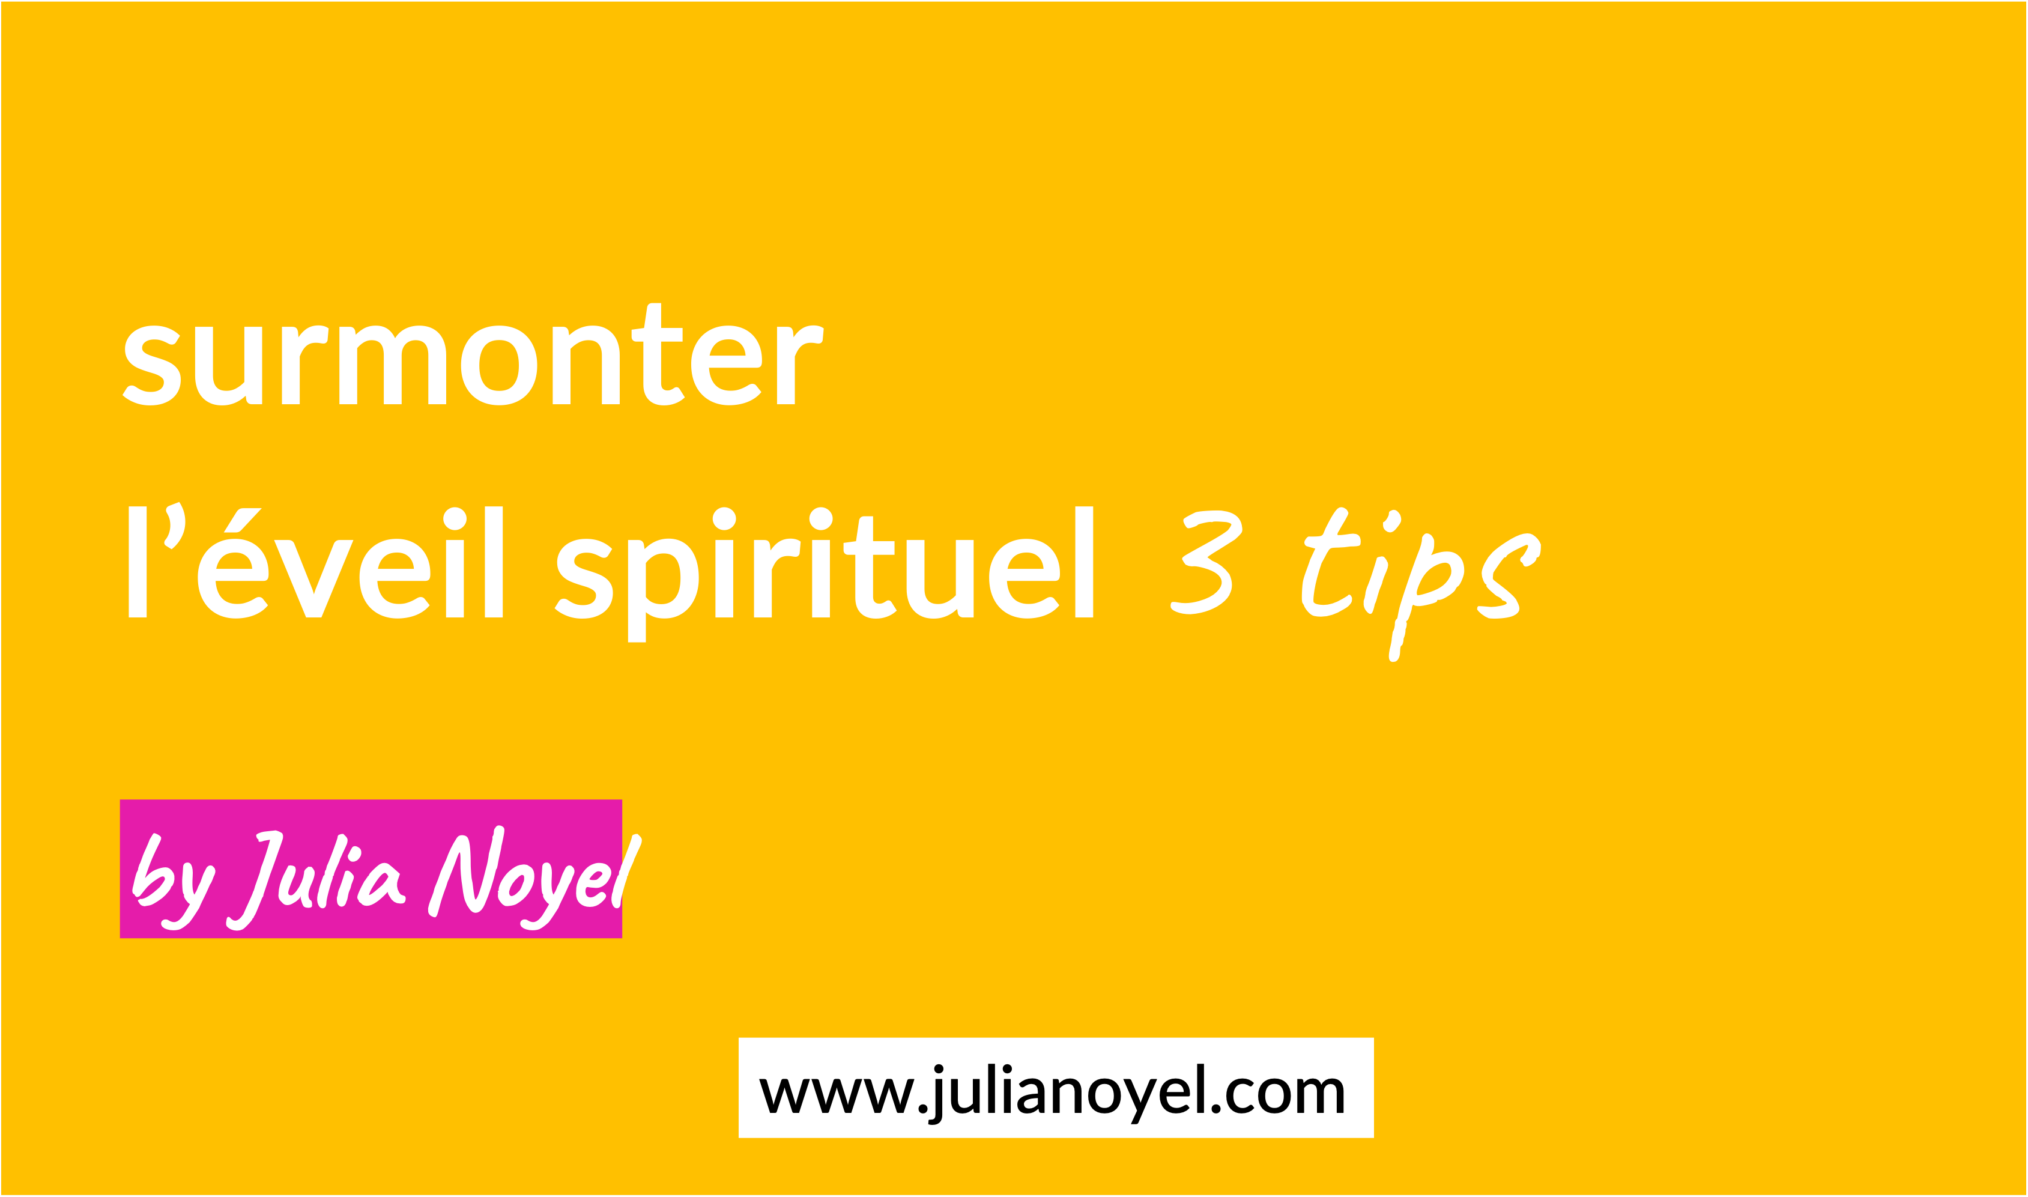 surmonter éveil spirituel 3 tips by Julia Noyel